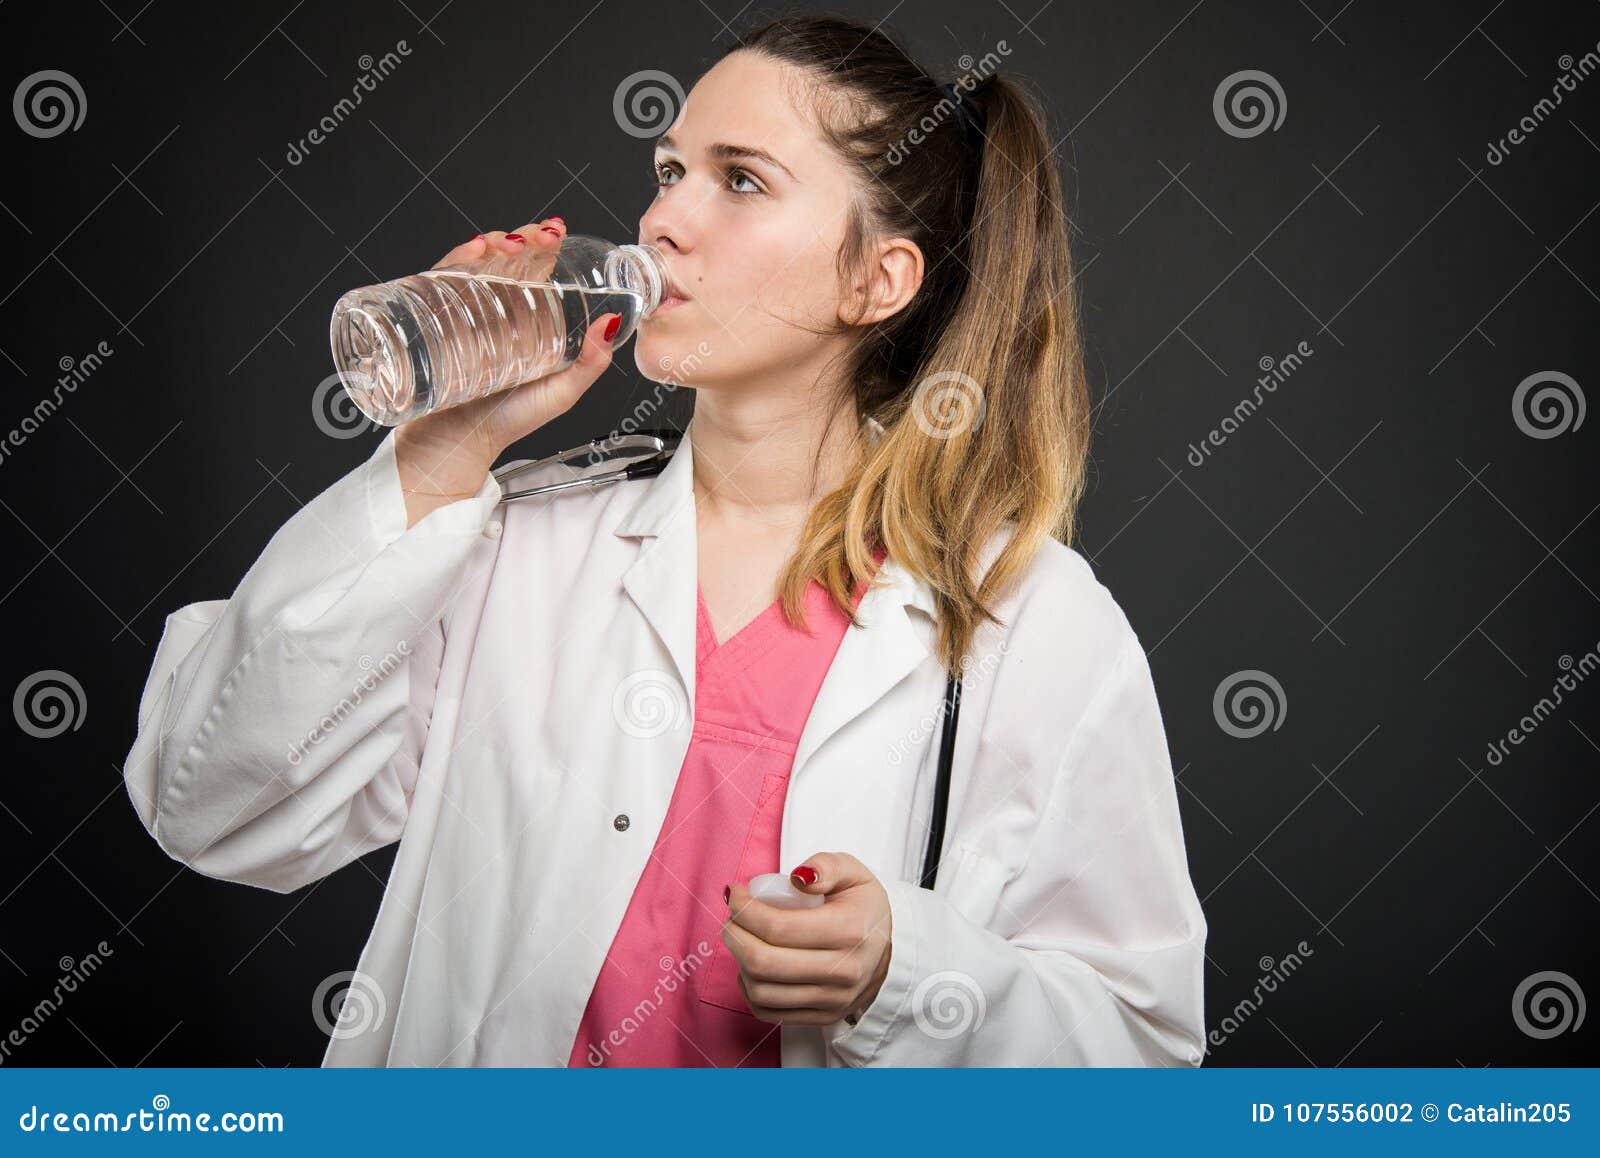 Врачи пьют много. Женщина в халате с бутылкой воды. Женщина доктор пьет. Врачи выпивают. Фото медики пьют.